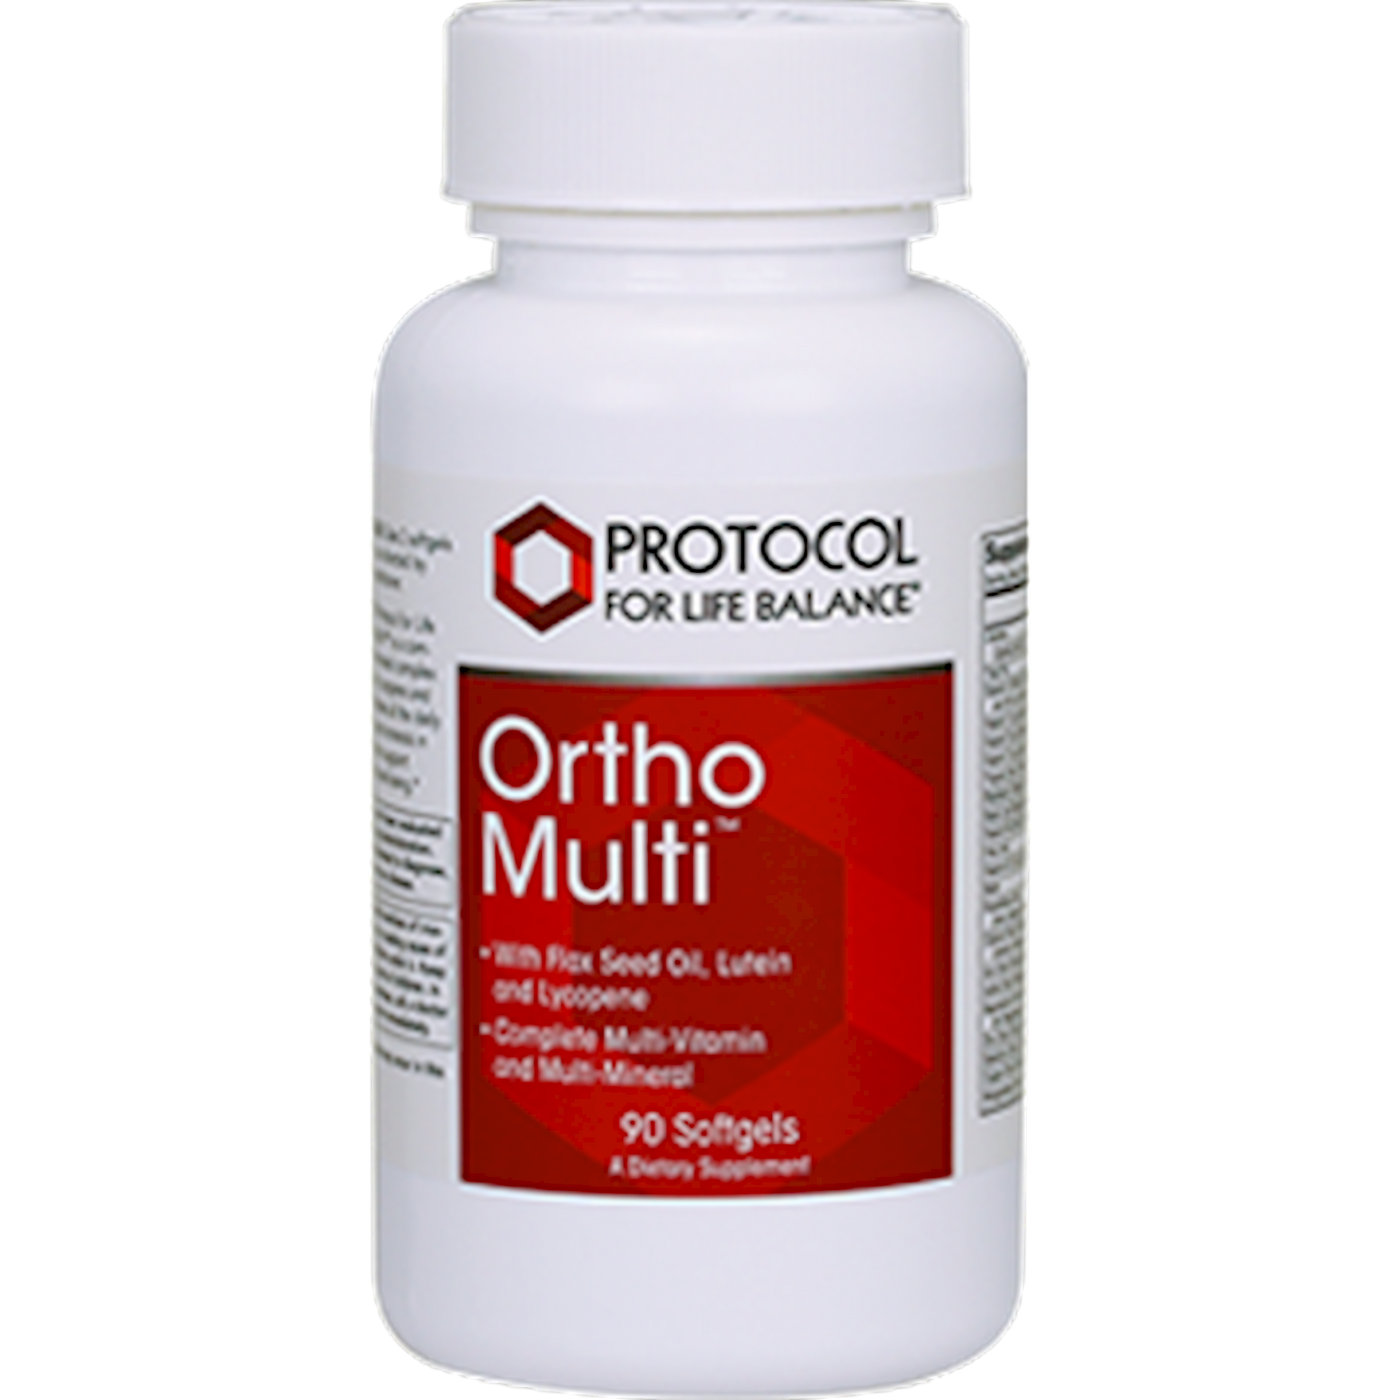 Ortho Multi w/Flax Oil 400 mg 90 gels Curated Wellness